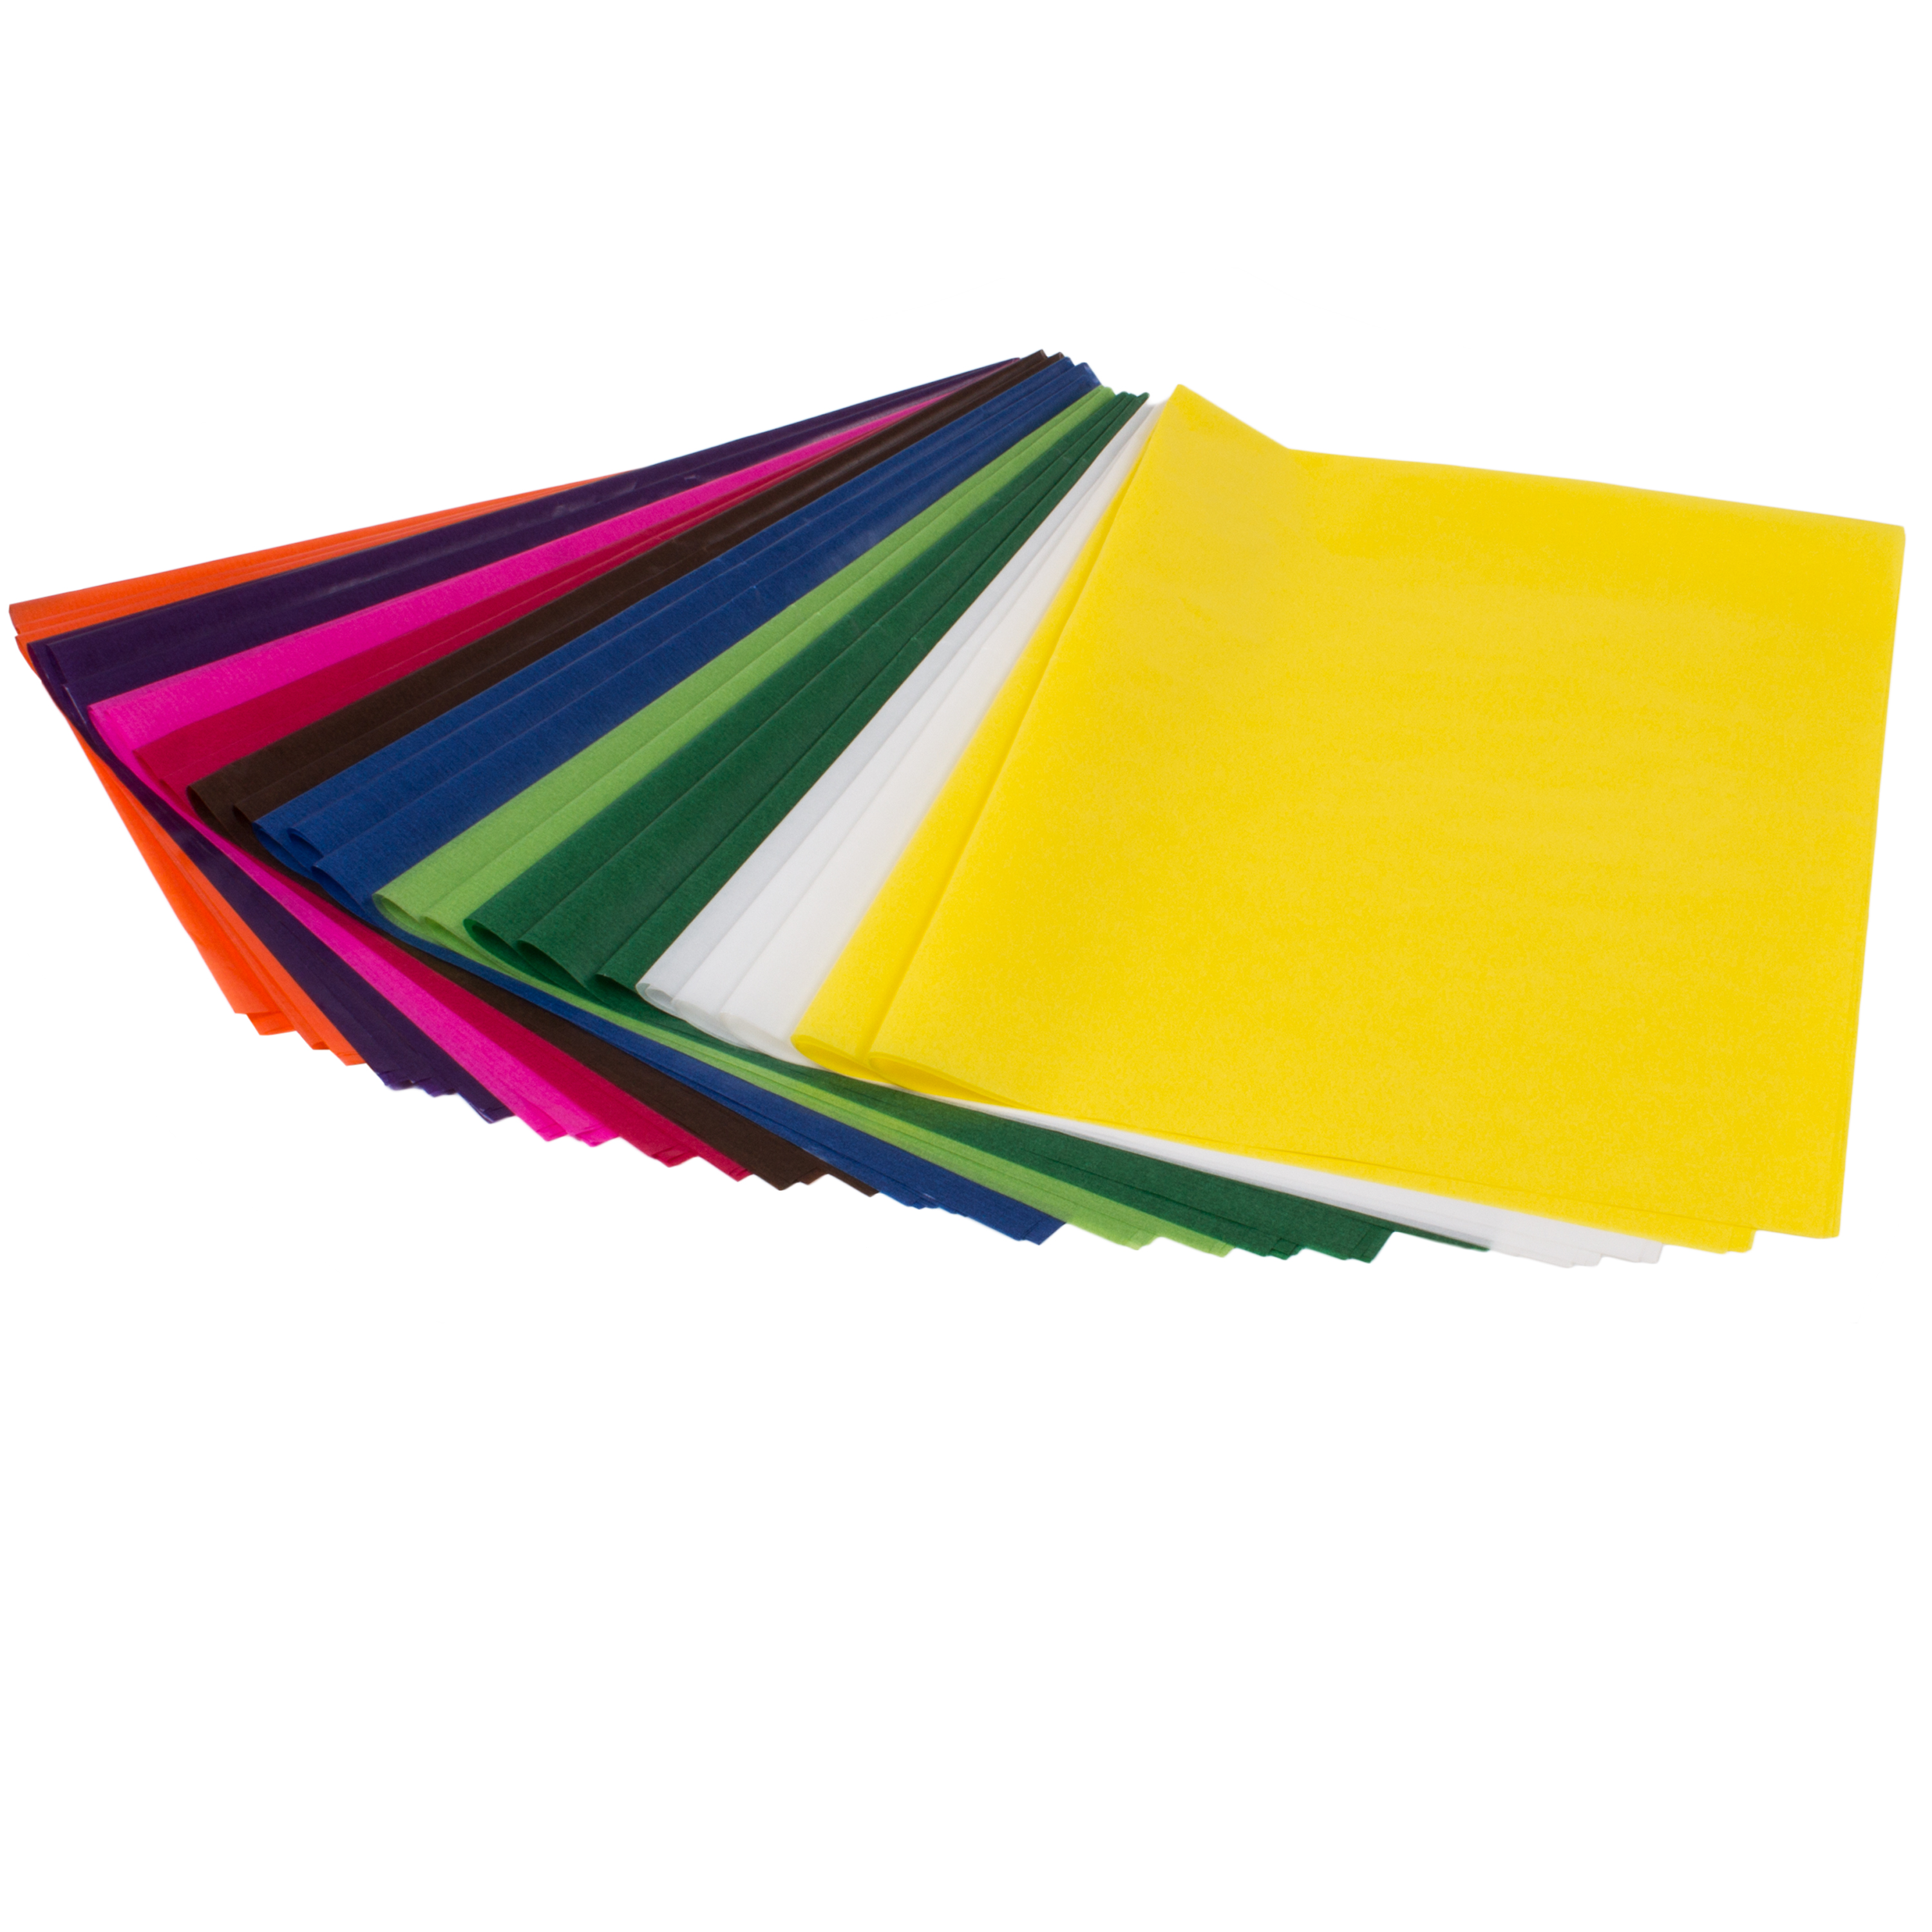 Transparentpapier farbig sortiert, 42 g/m², 100 Bögen